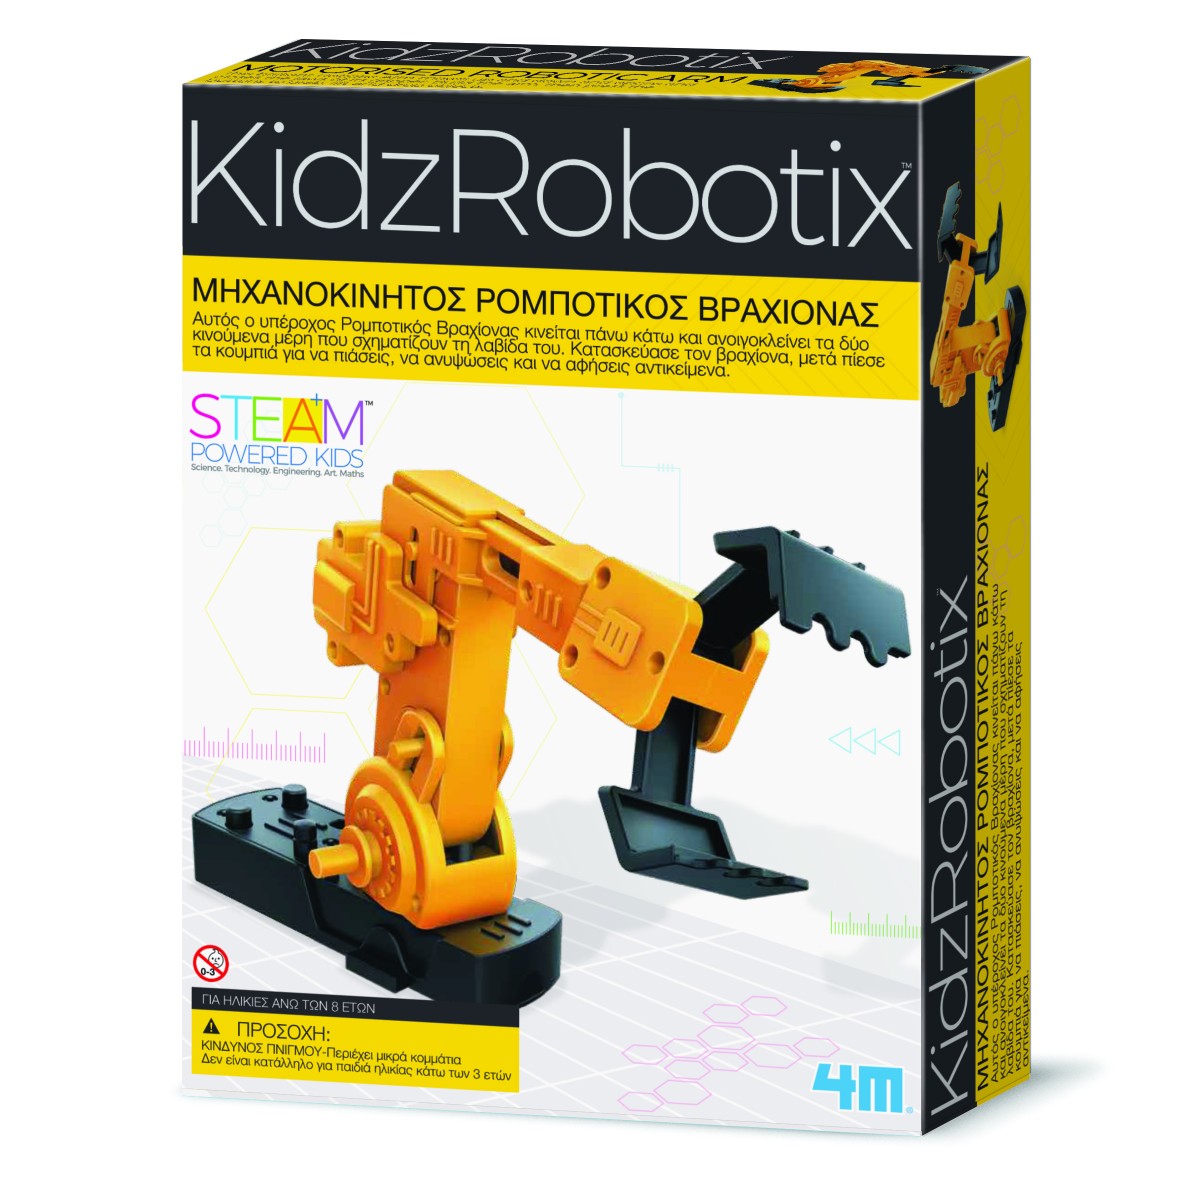 Μηχανοκίνητος Ρομποτικός Βραχίονας για παιδιά